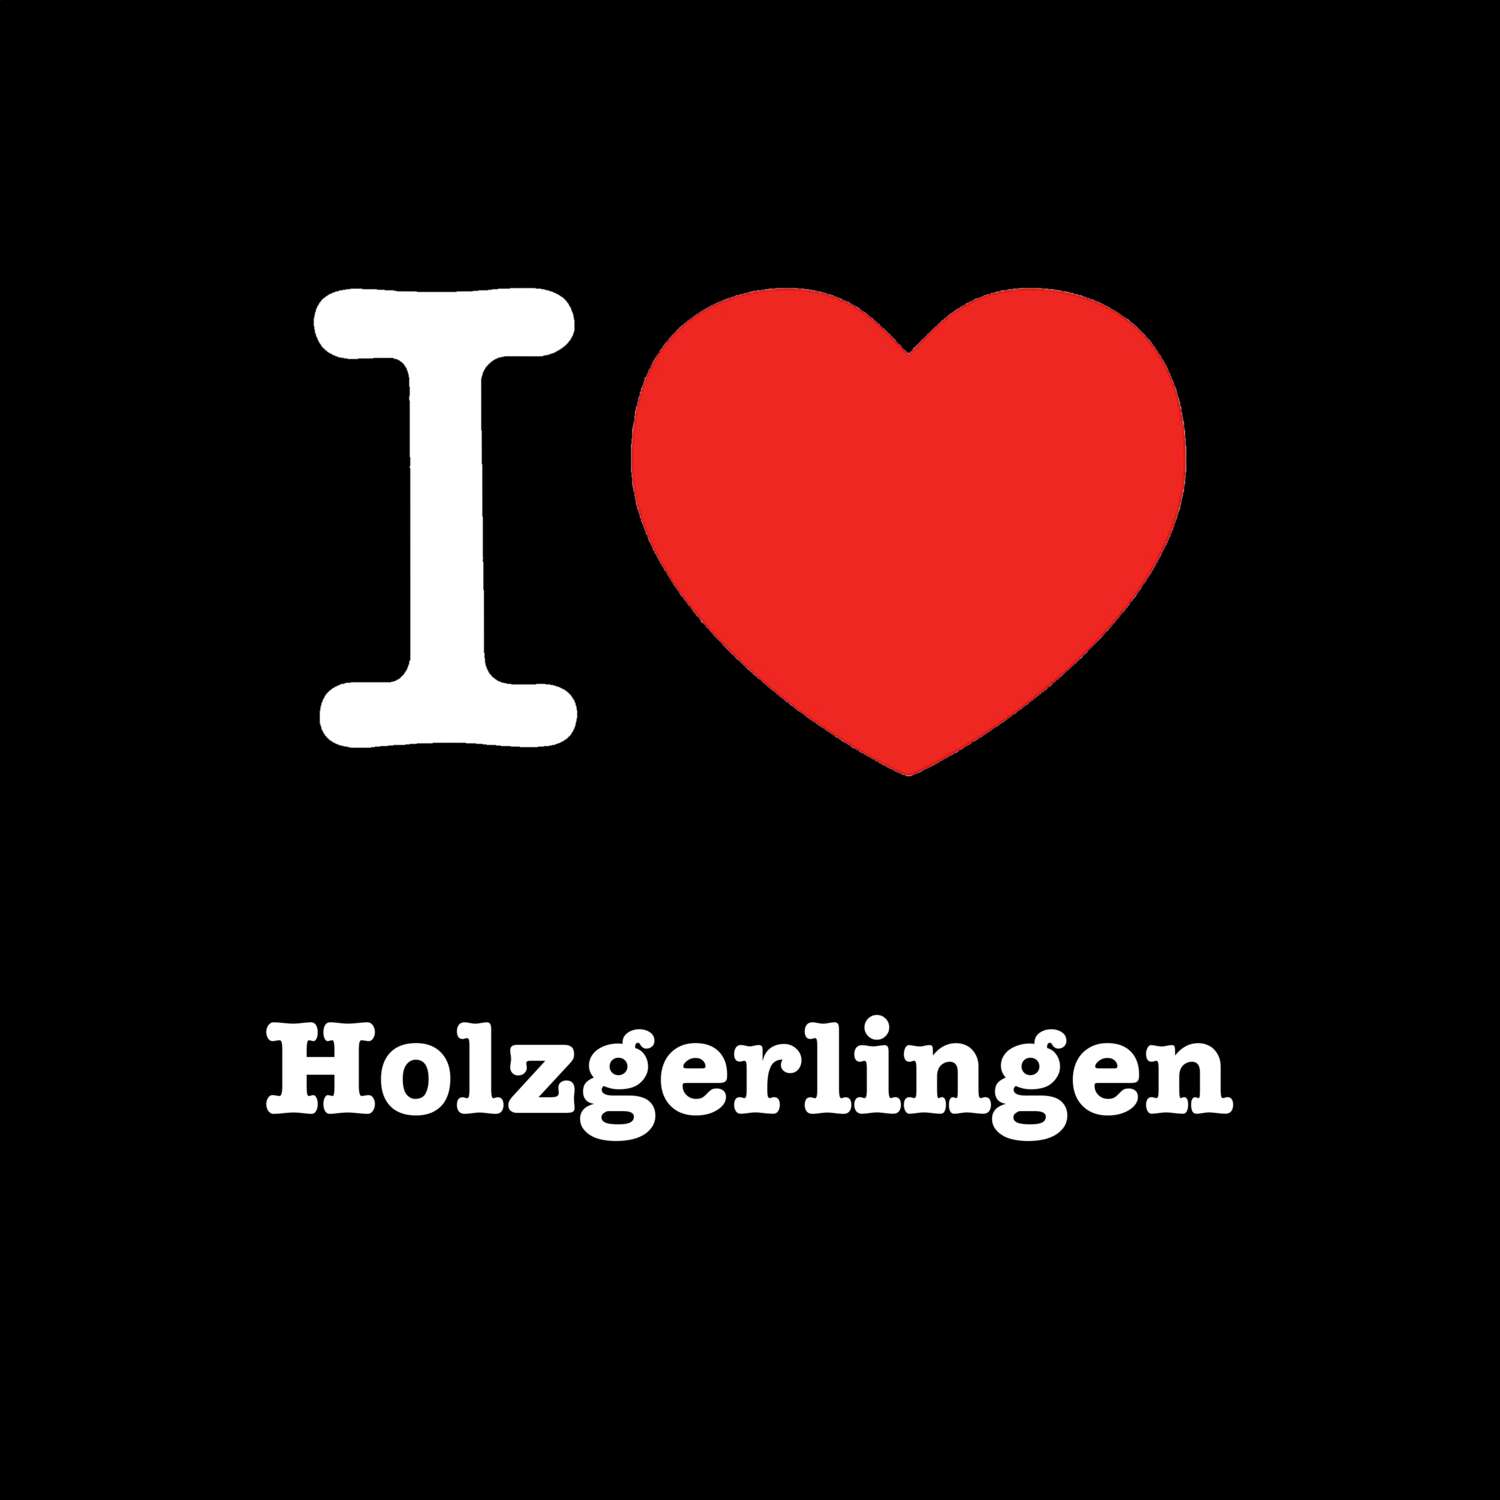 Holzgerlingen T-Shirt »I love«